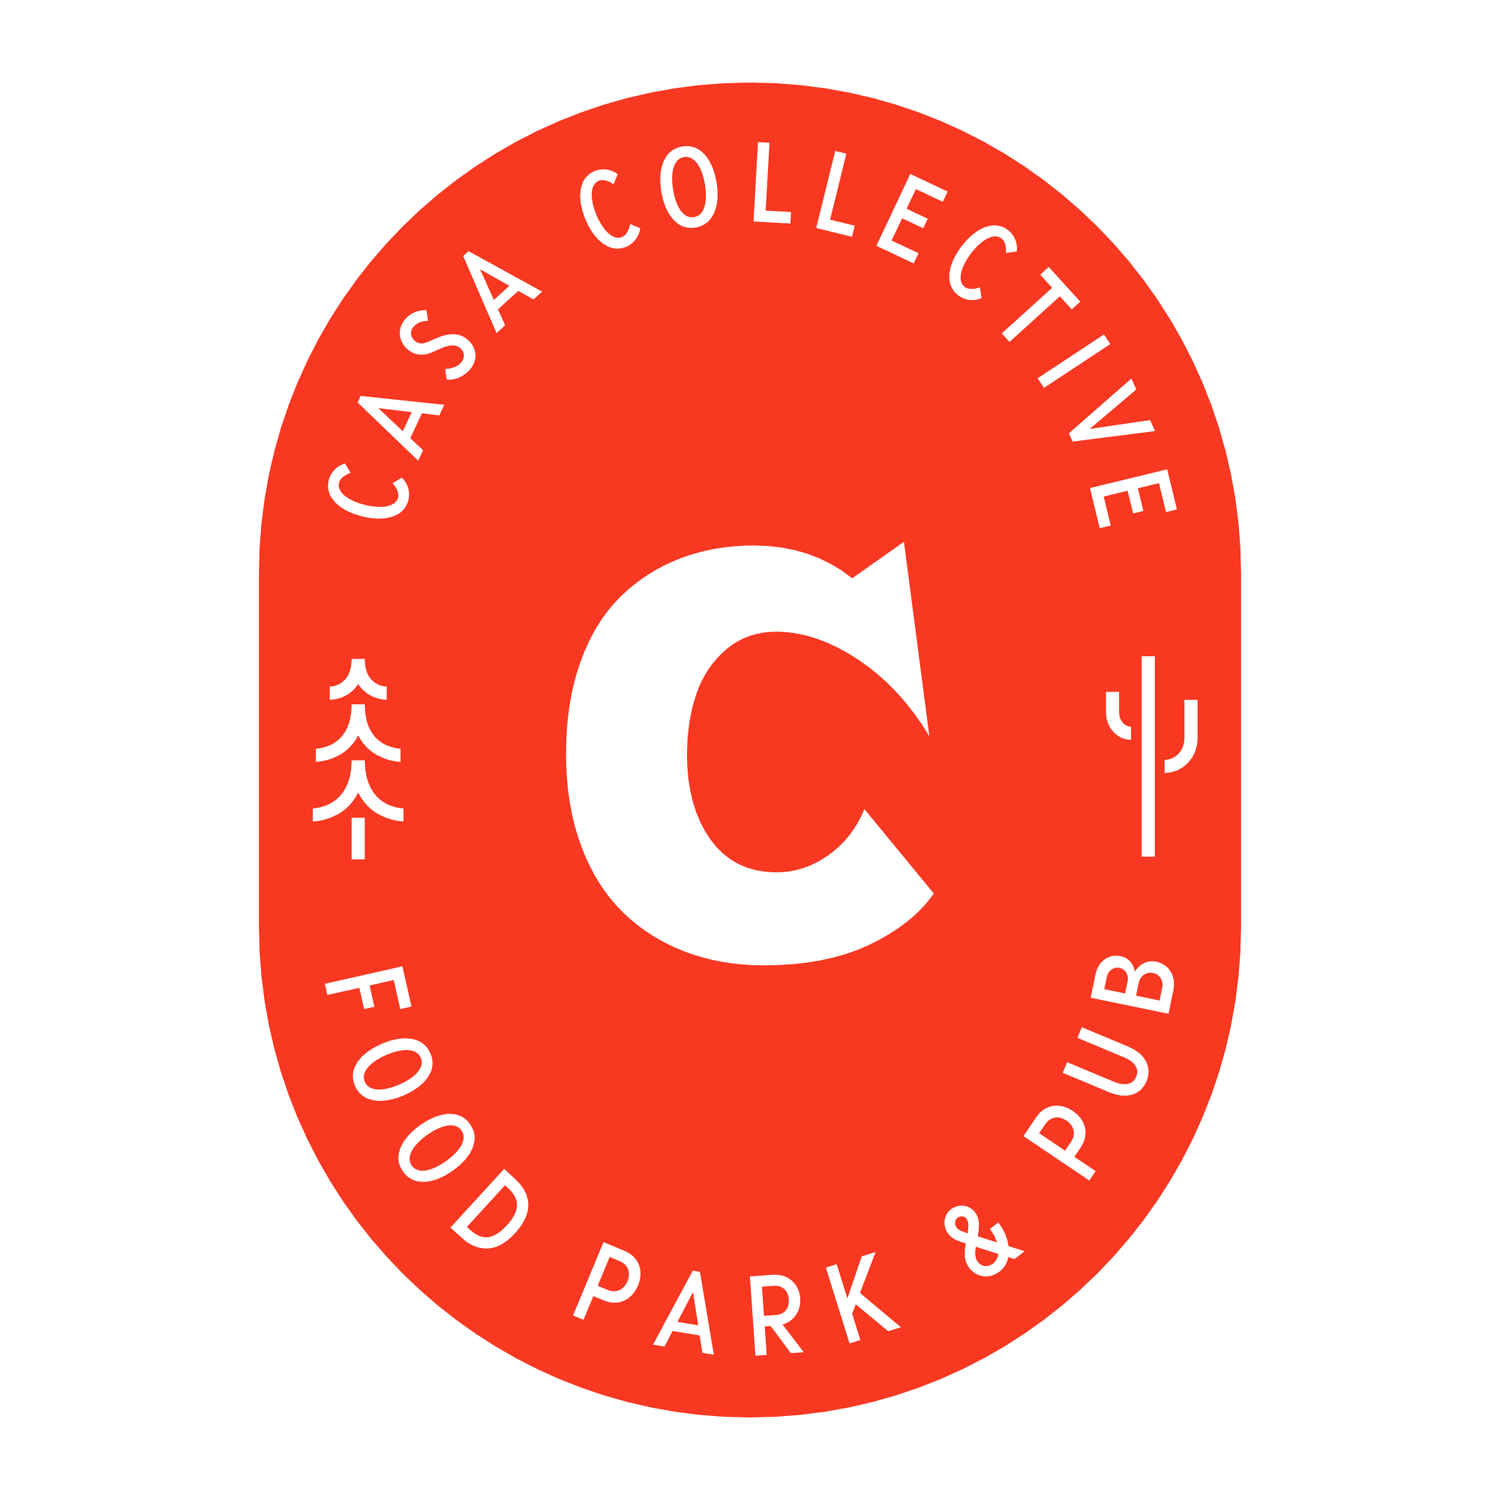 Casa Collective 